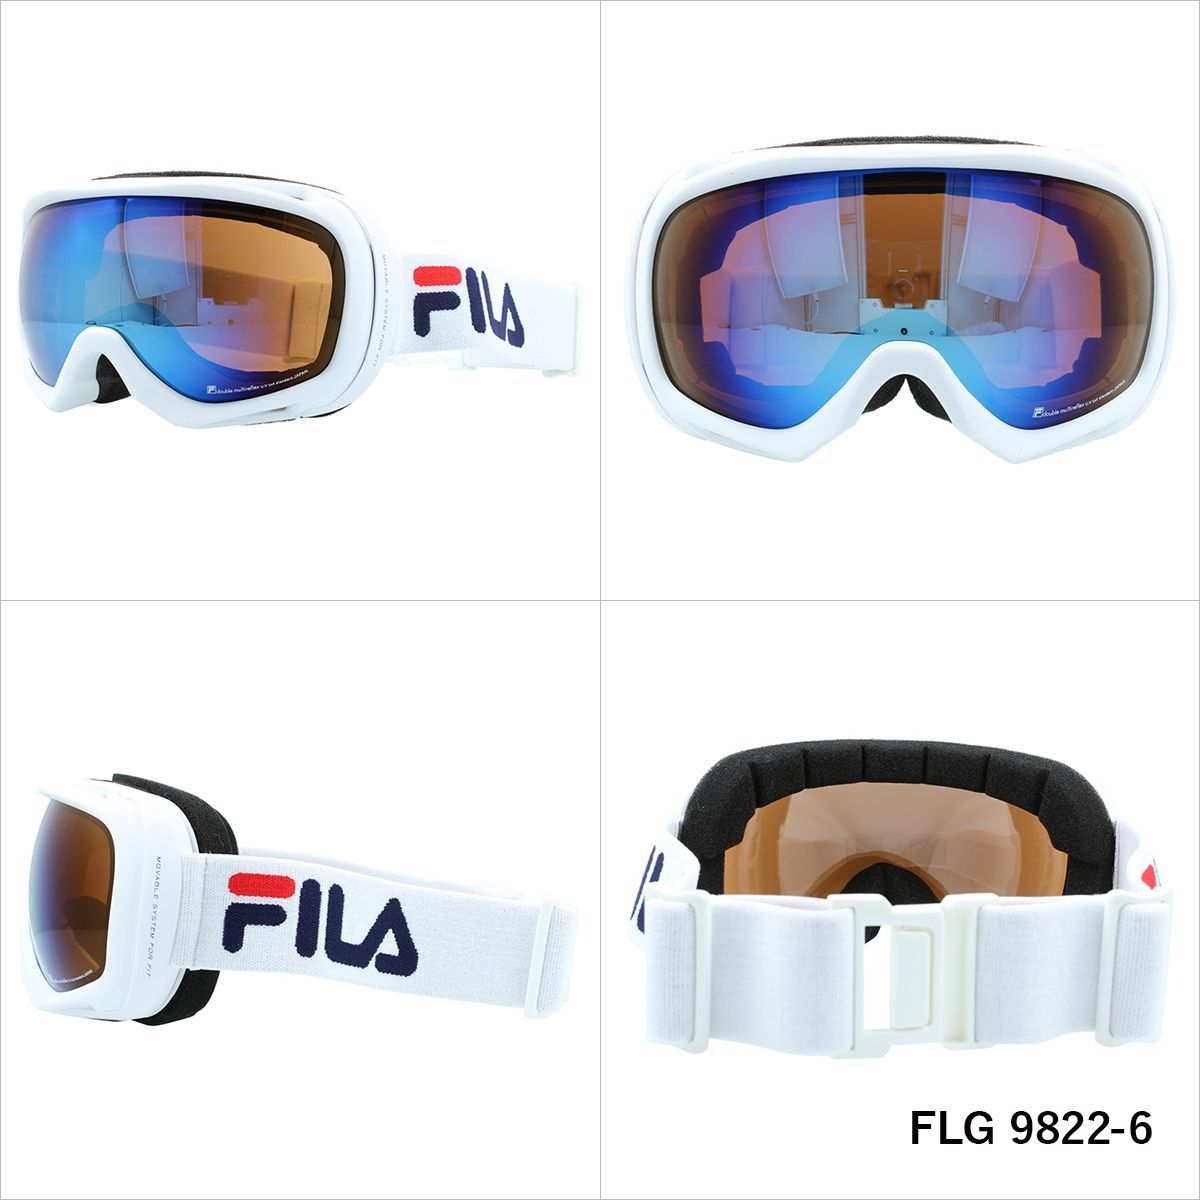 FILA フィラ スキー ゴーグル スノボ スノーゴーグル メガネ対応 ミラー 球面ダブルレンズ メンズ レディース スノーボード FLG 9822  UVカット 曇り止め加工